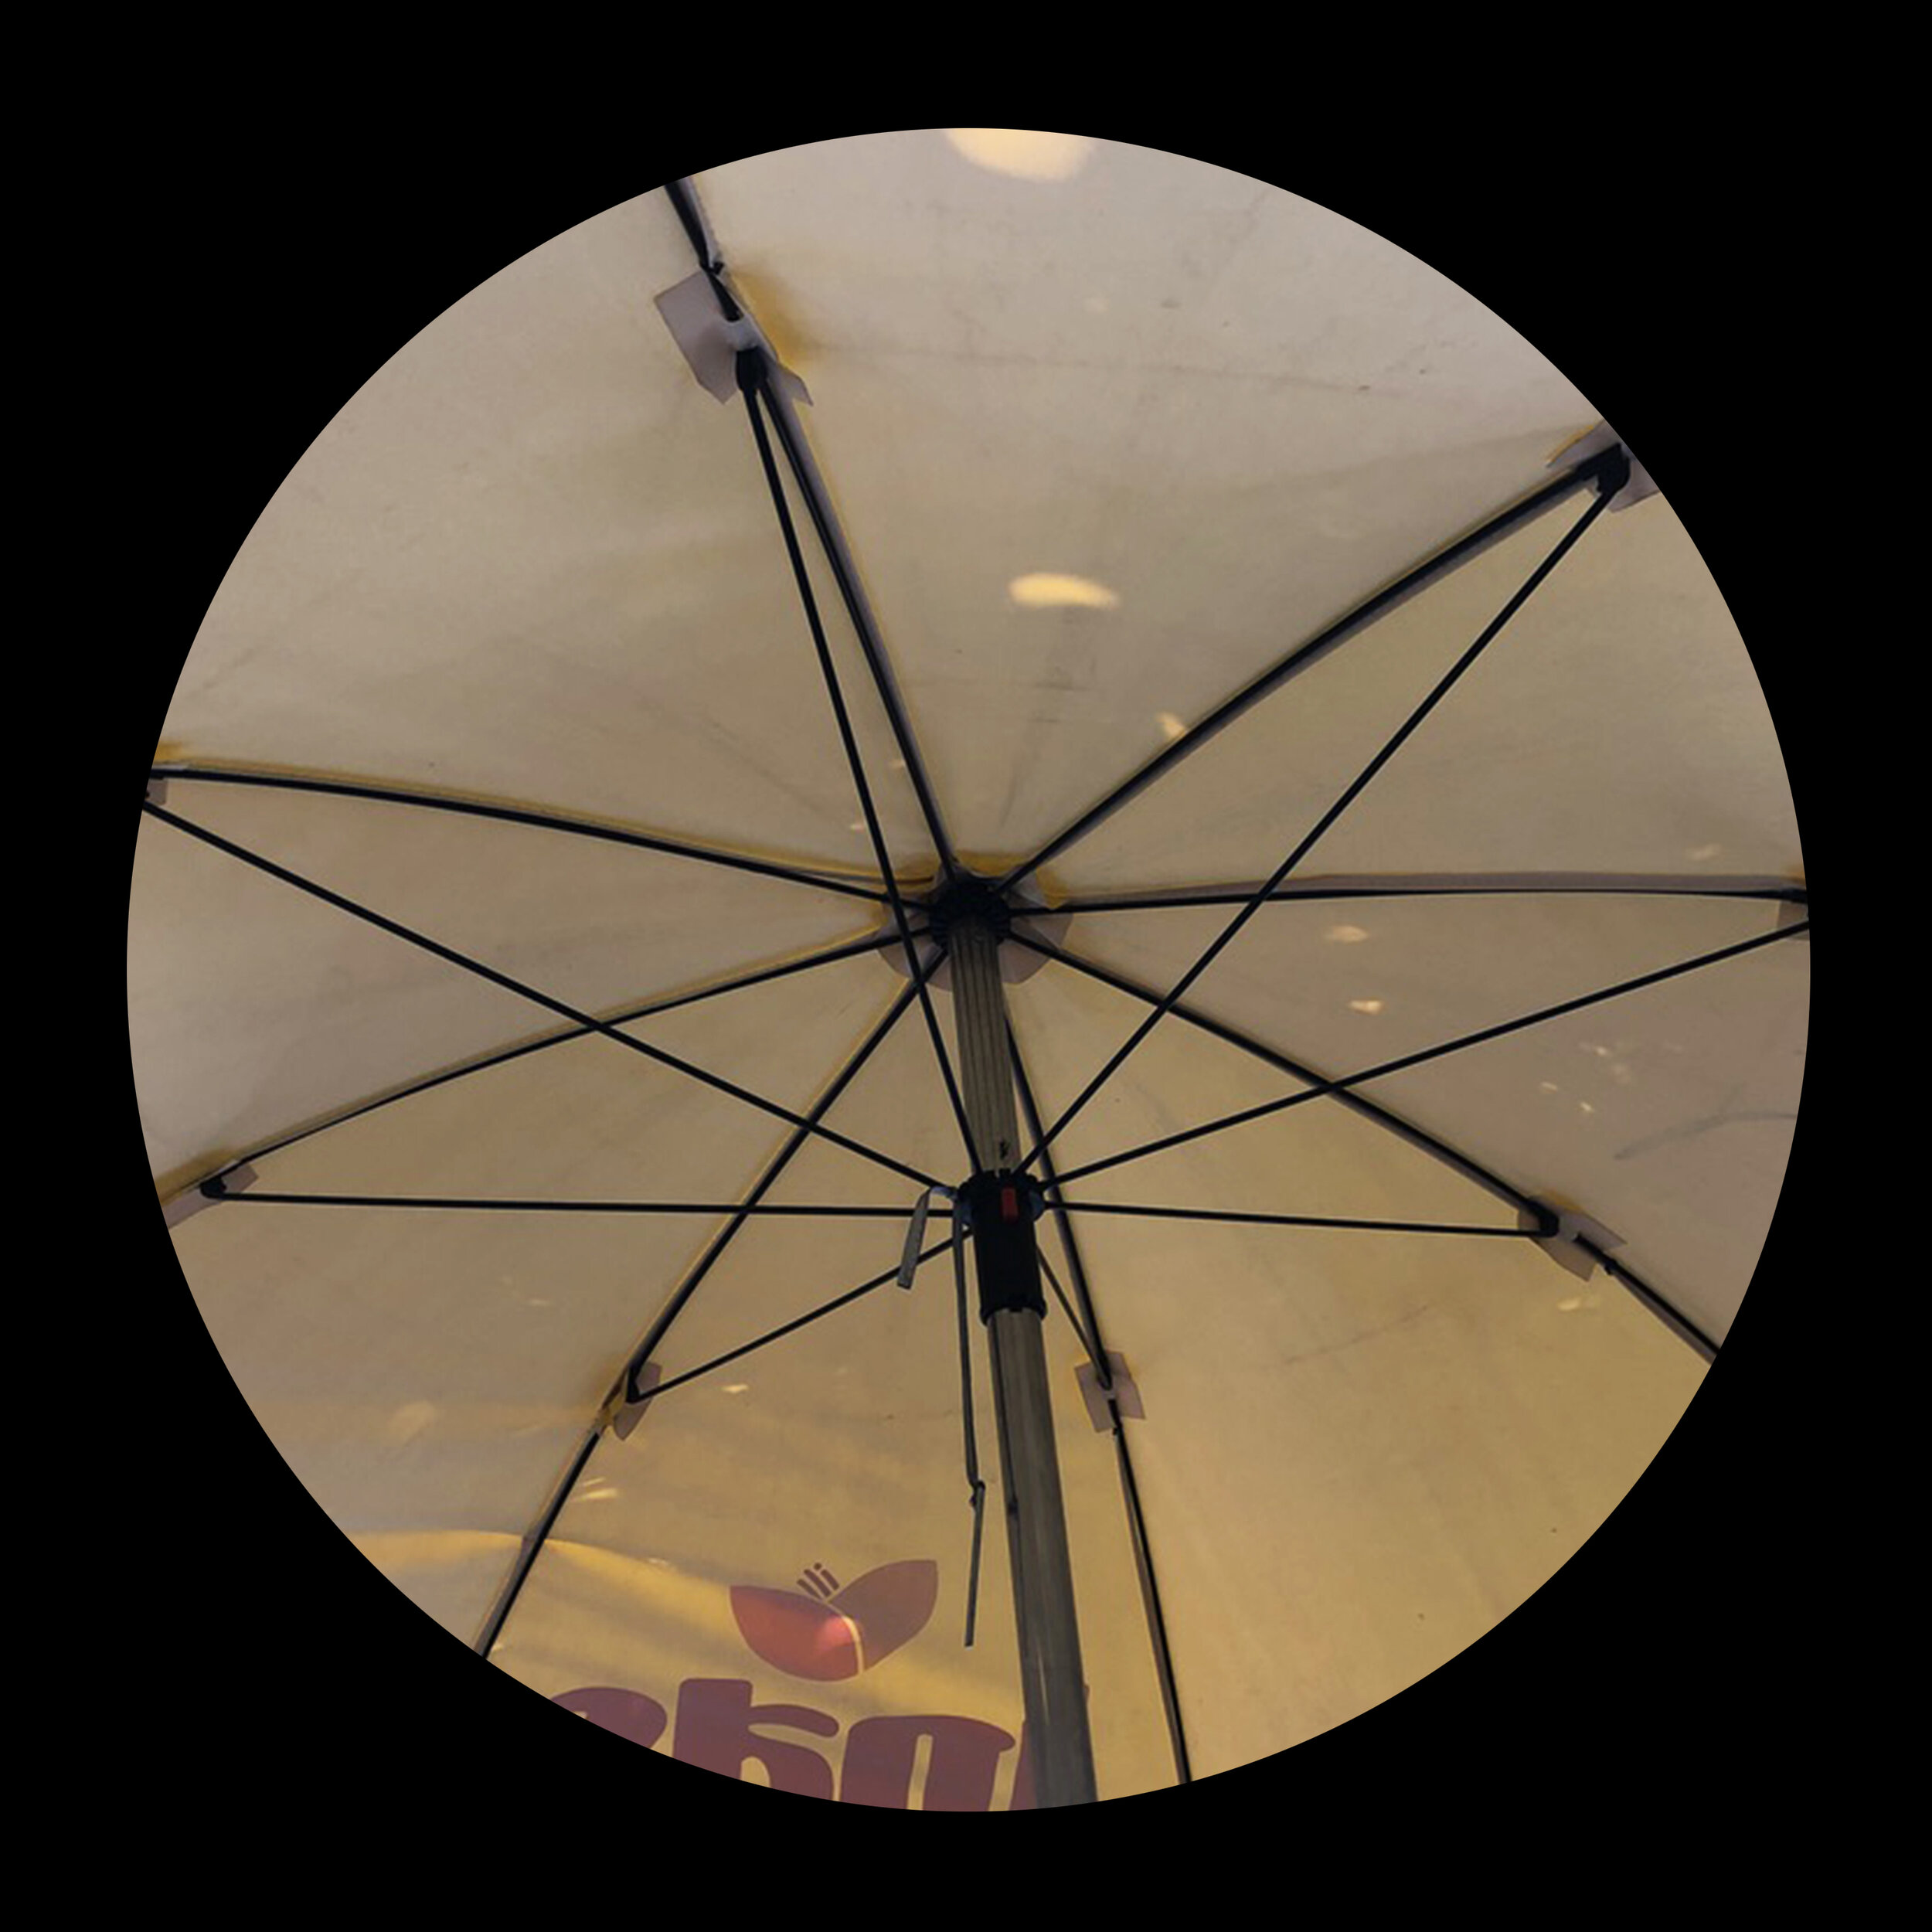 umbrellas_inner_09.jpg